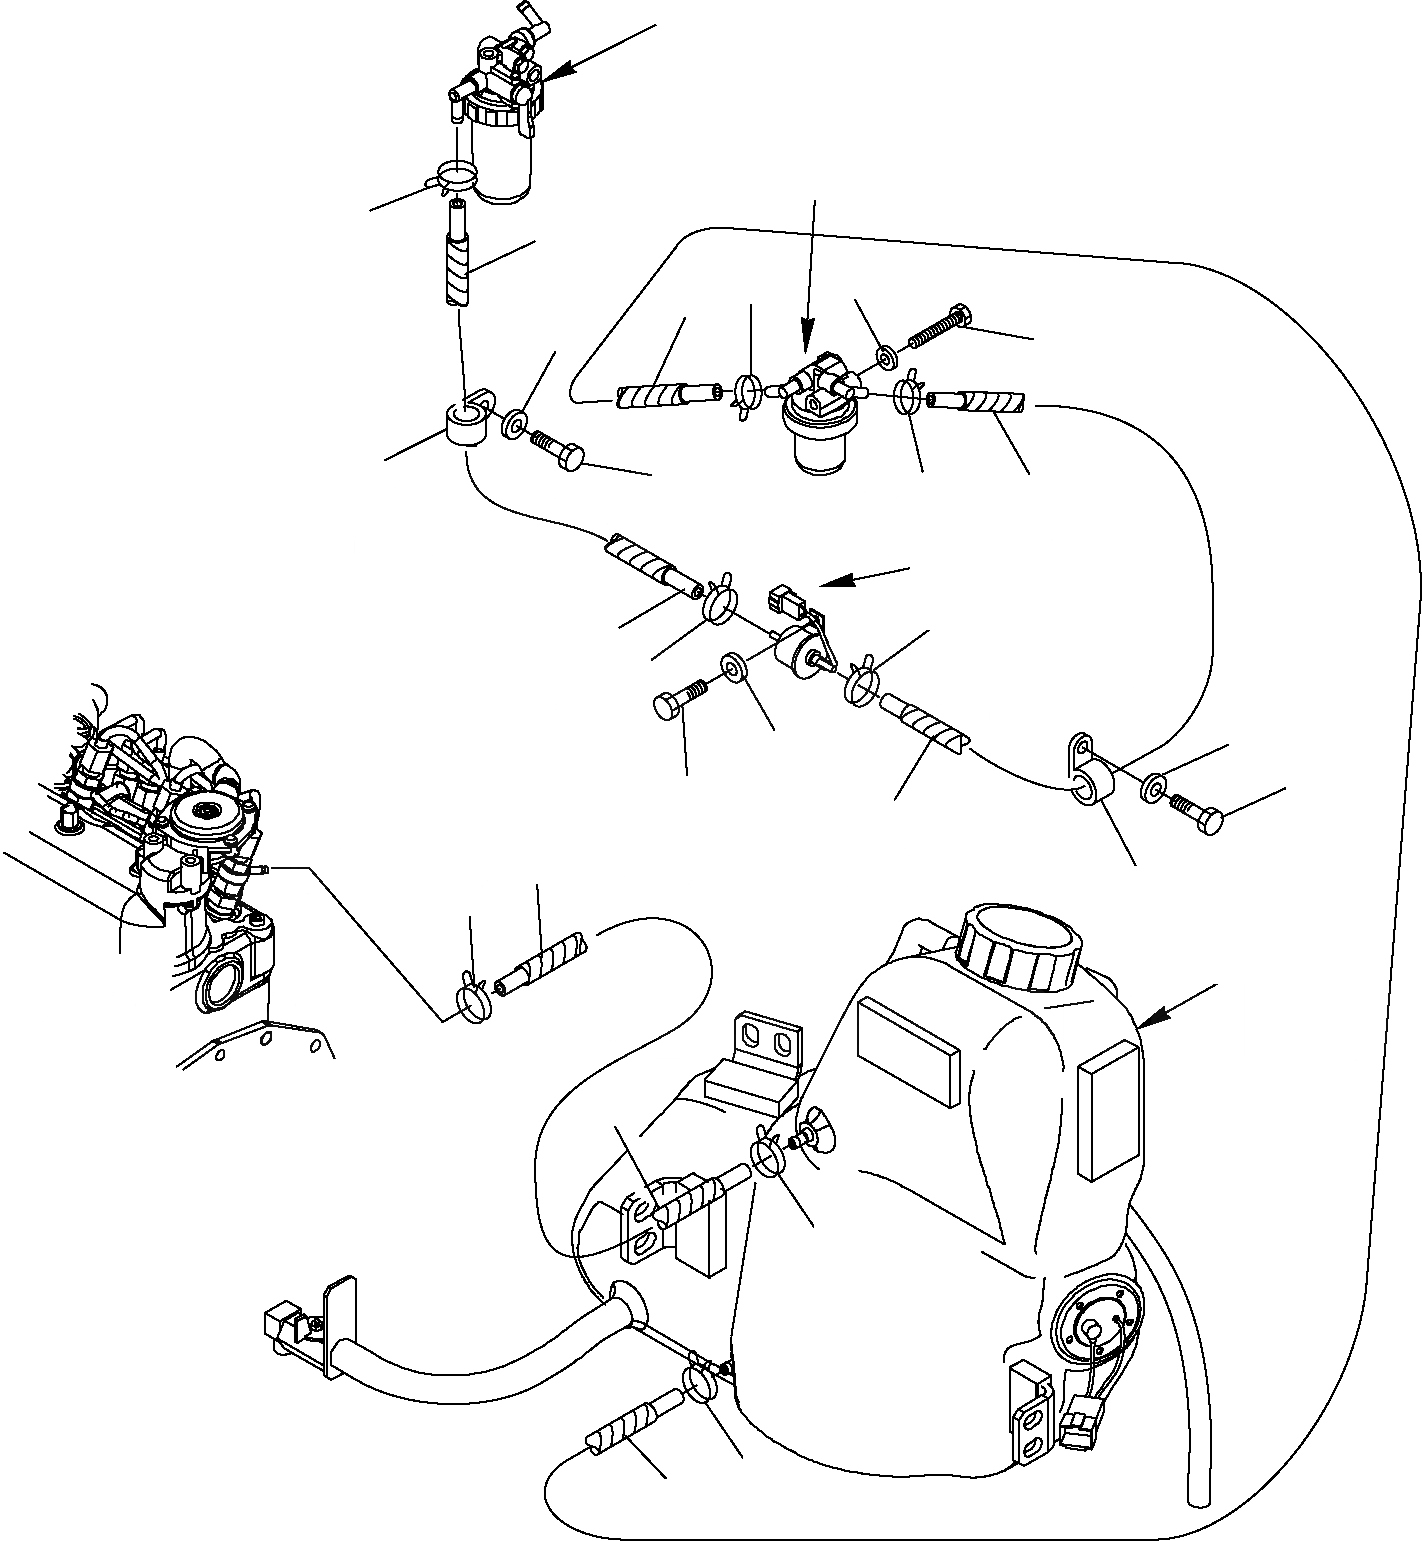 Схема запчастей Komatsu PC14R-2 - ТОПЛИВОПРОВОД. КОМПОНЕНТЫ ДВИГАТЕЛЯ И ЭЛЕКТРИКА